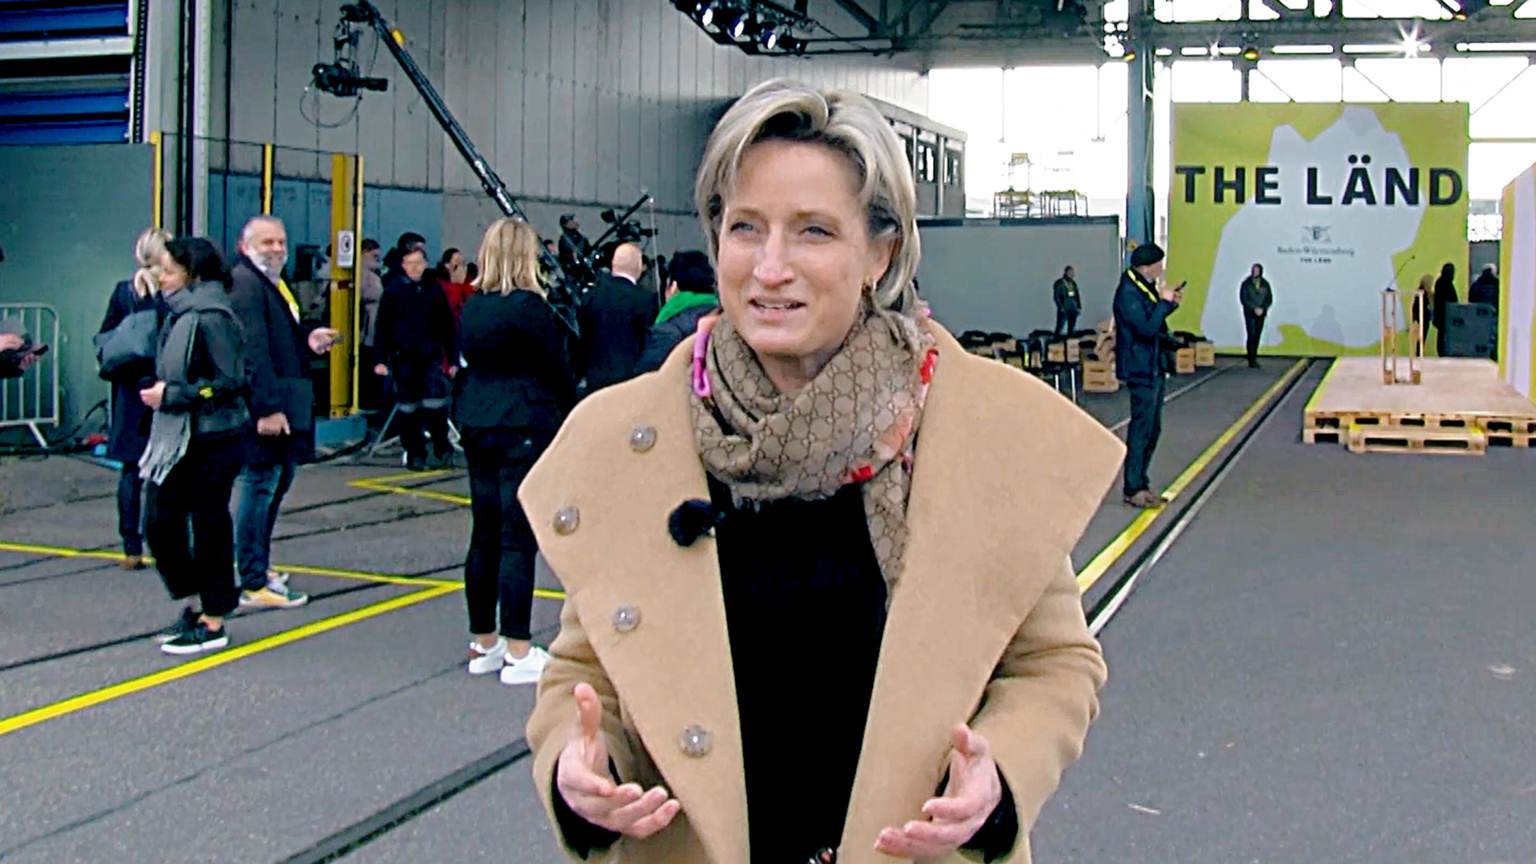 Eine Frau im Mantel steht im Vordergrund und redet. Im Hintergrund sieht man Kameras und ein großes "LÄND" Plakat.